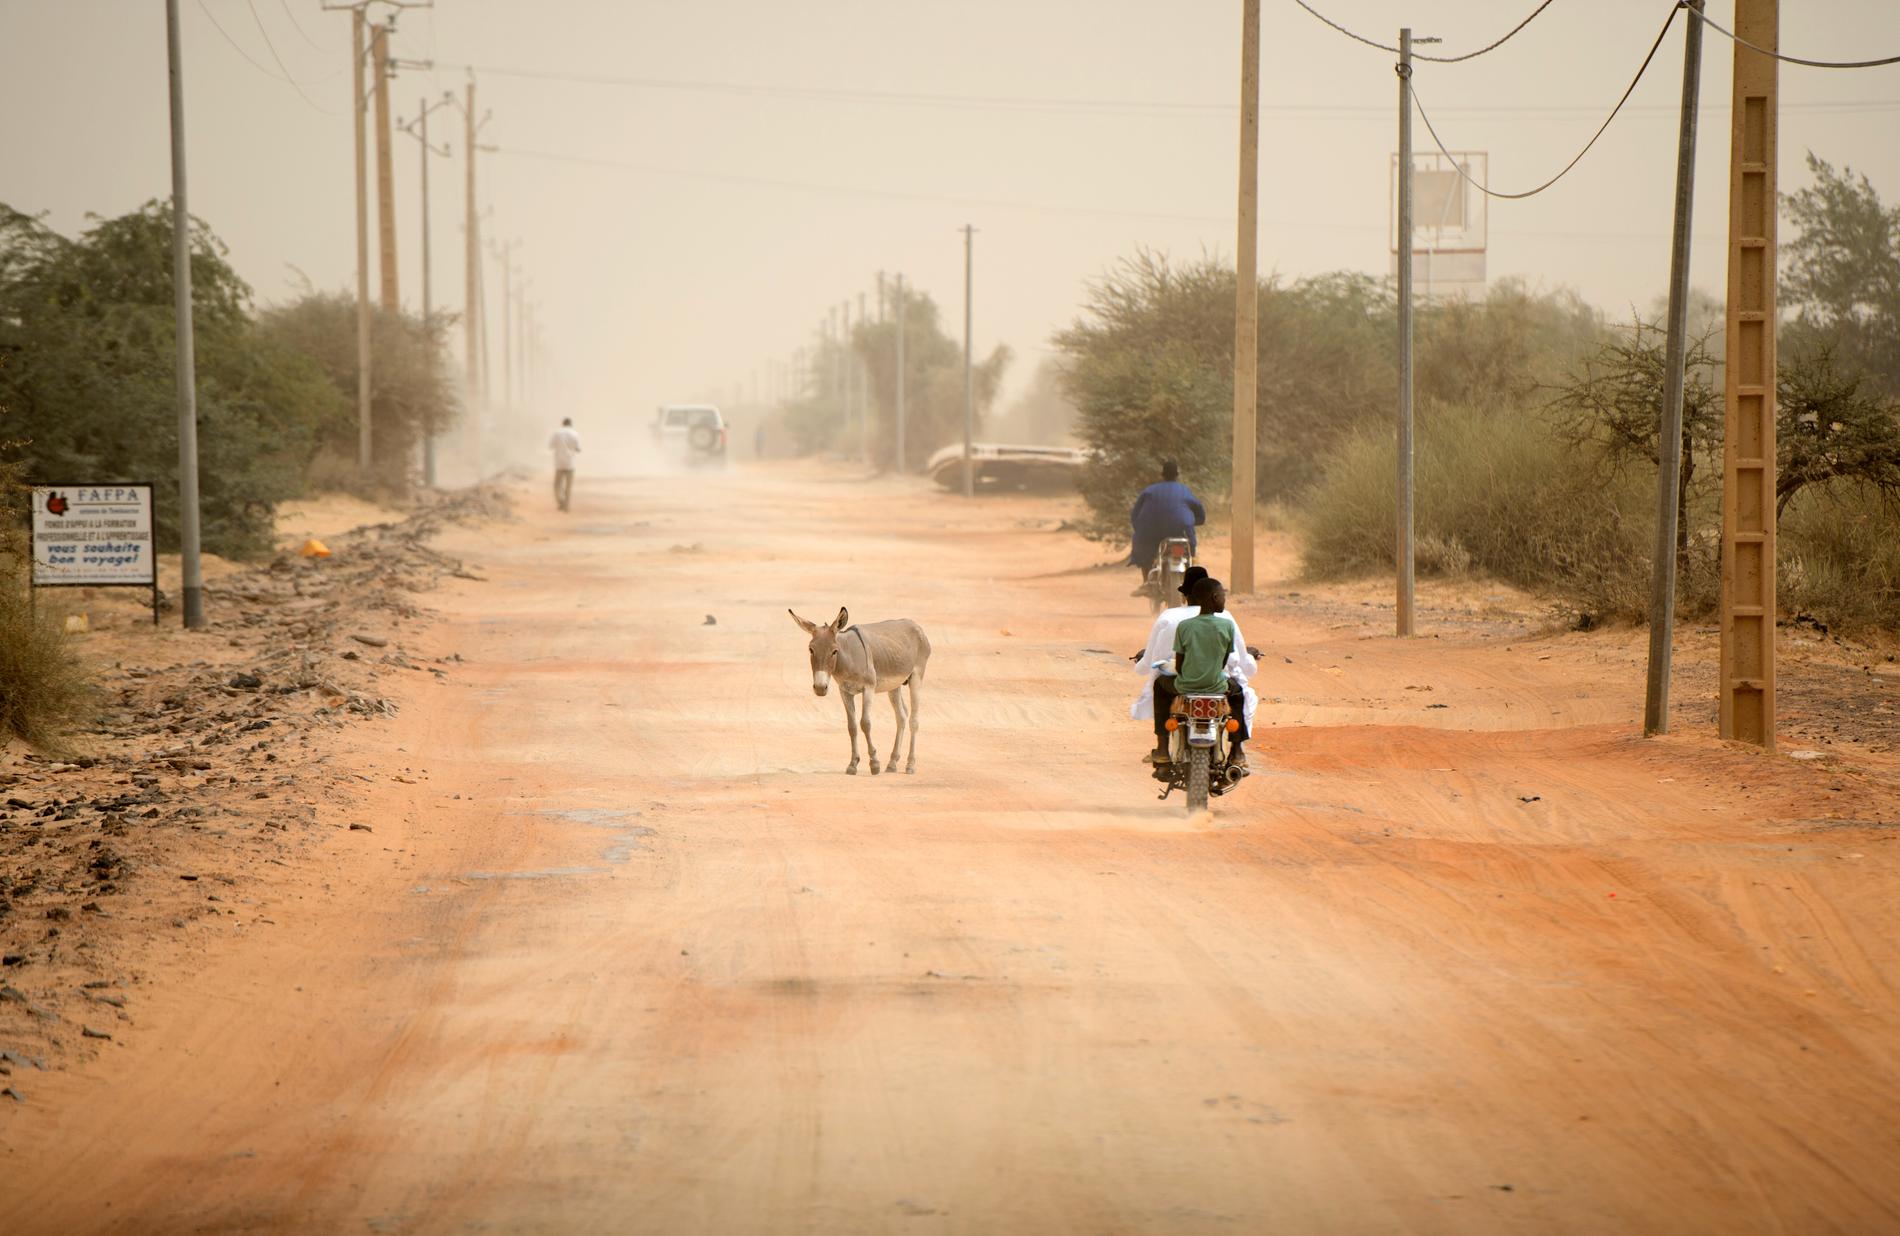 Beväpnade män på motorcyklar sköt ihjäl över 20 civila i Mali. Bilden från Timbuktu är taget vid ett annat tillfälle.